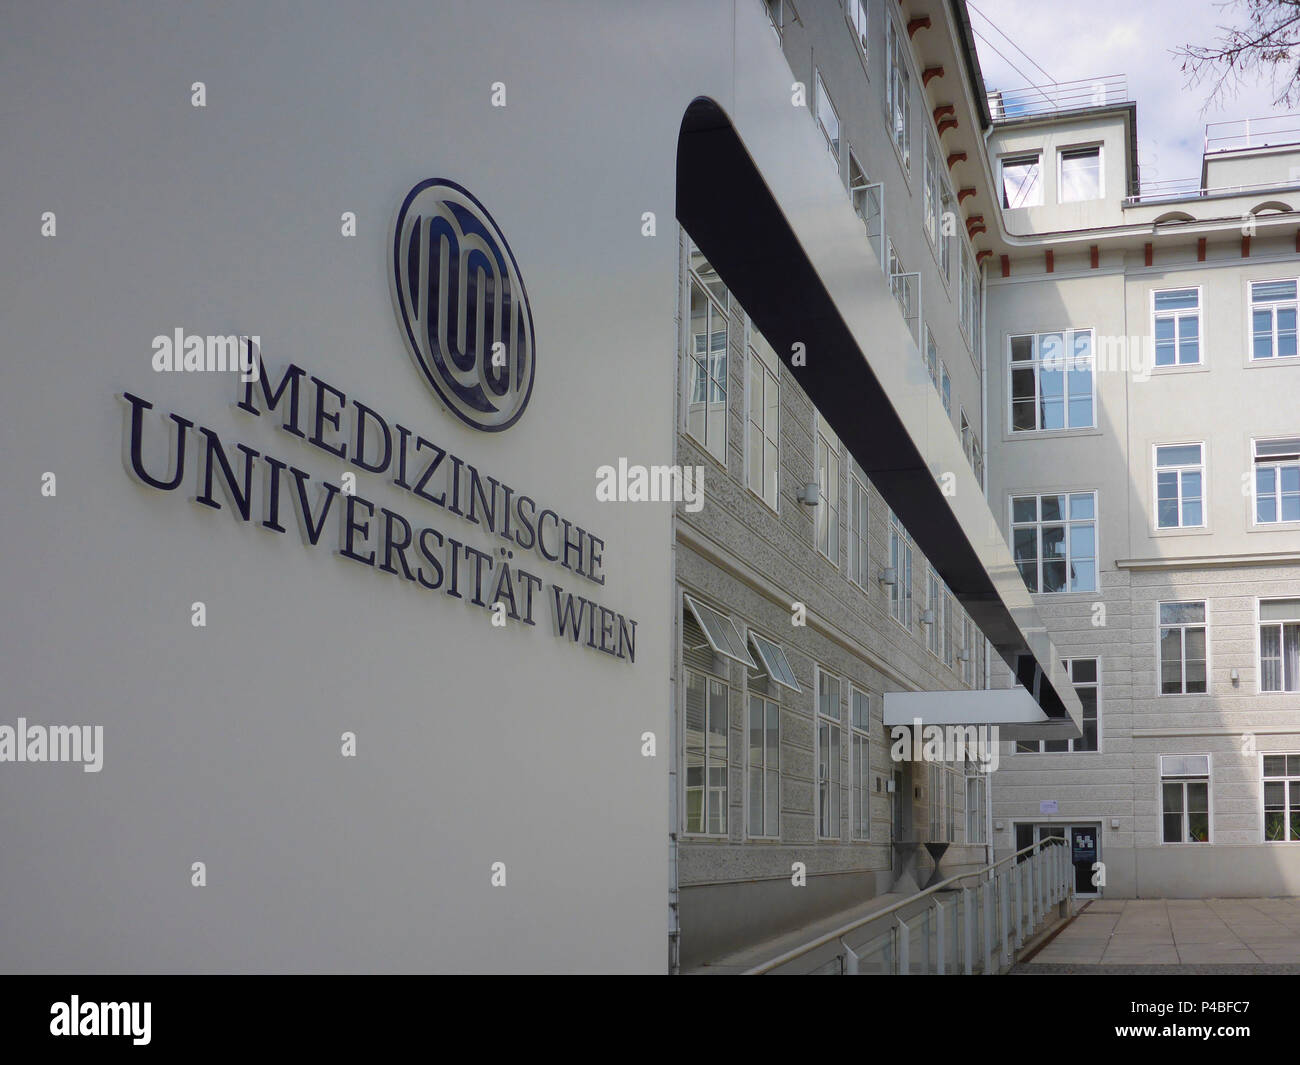 Vienna, Medizinische Universität (Medical University), 09. Alsergrund, Wien, Austria Stock Photo